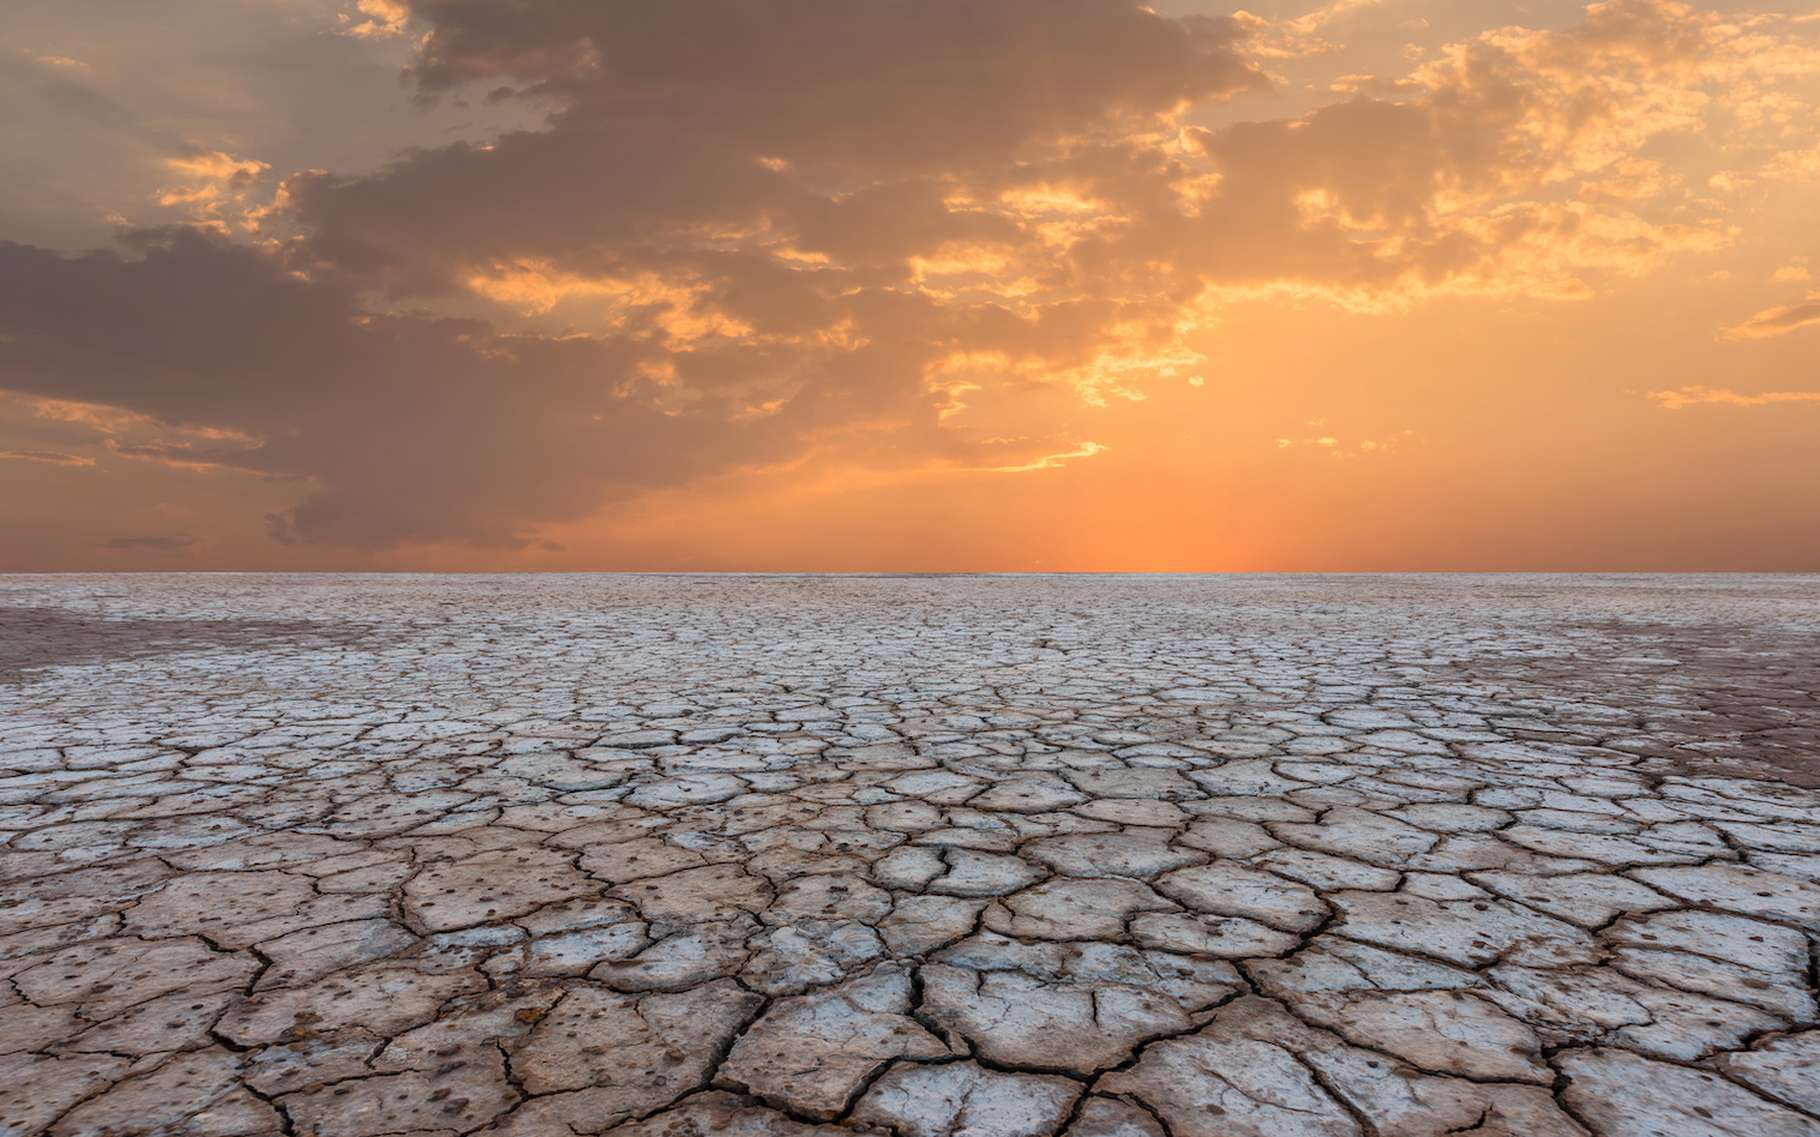 Des chercheurs de l’université du Texas à Austin (États-Unis) soulignent que les sécheresses éclair surviennent bien plus vite aujourd’hui qu’il y a vingt ans. © yotrakbutda, Adobe Stock